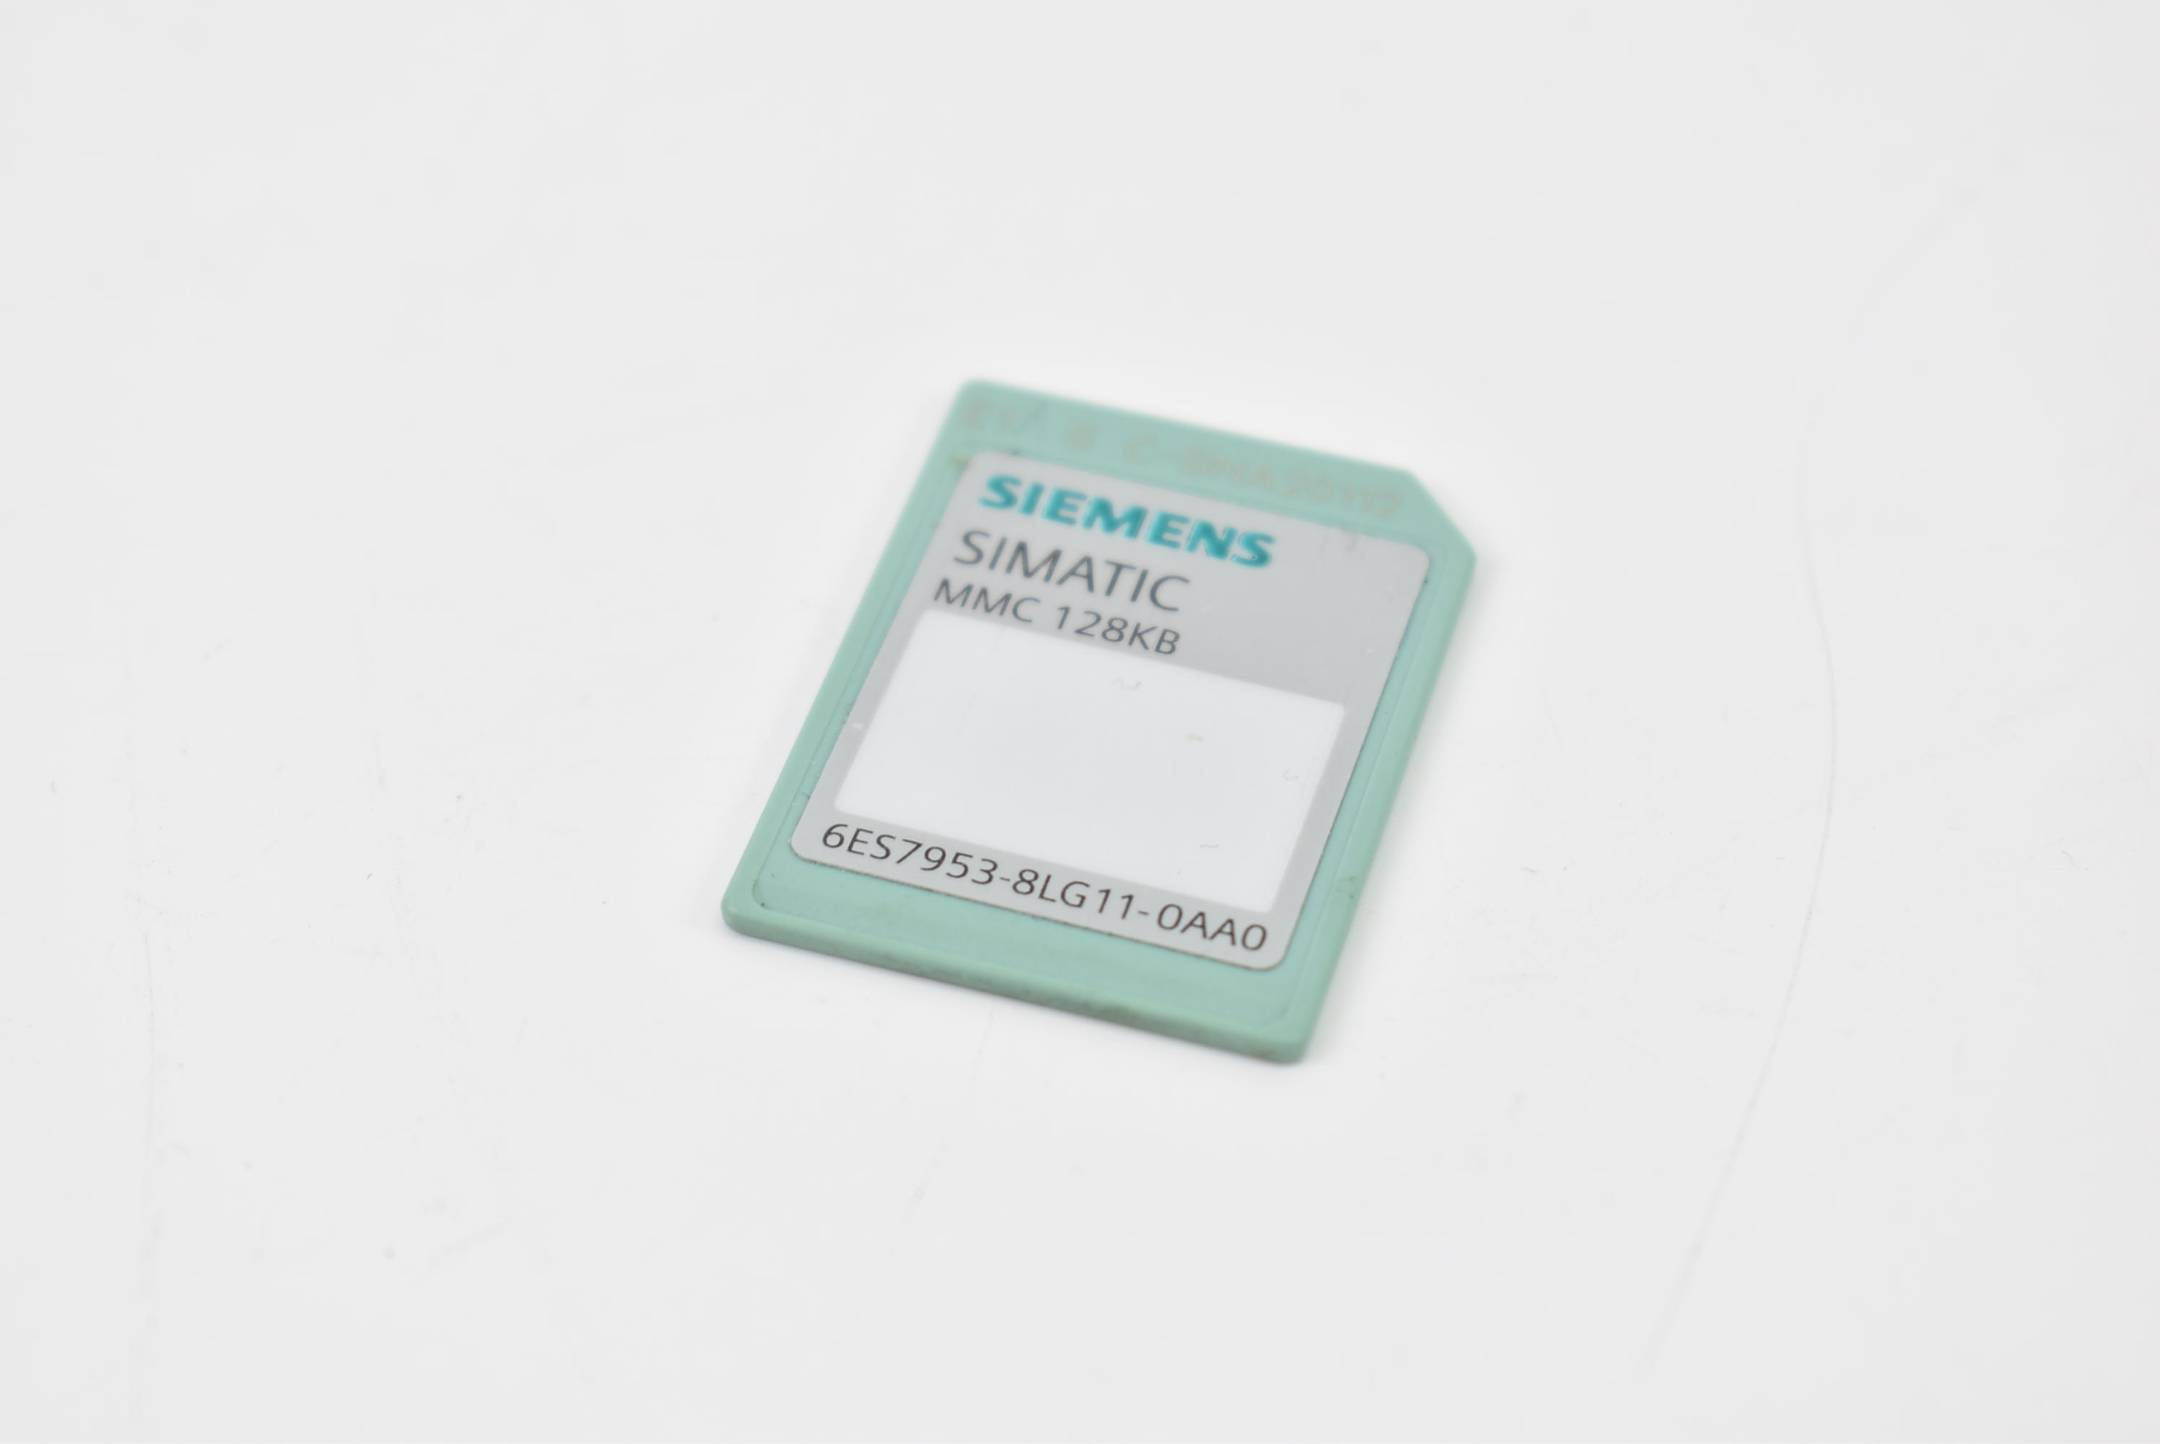 Siemens simatic S7 MMC 128KB 6ES7953-8LG11-0AA0 ( 6ES7 953-8LG11-0AA0  )